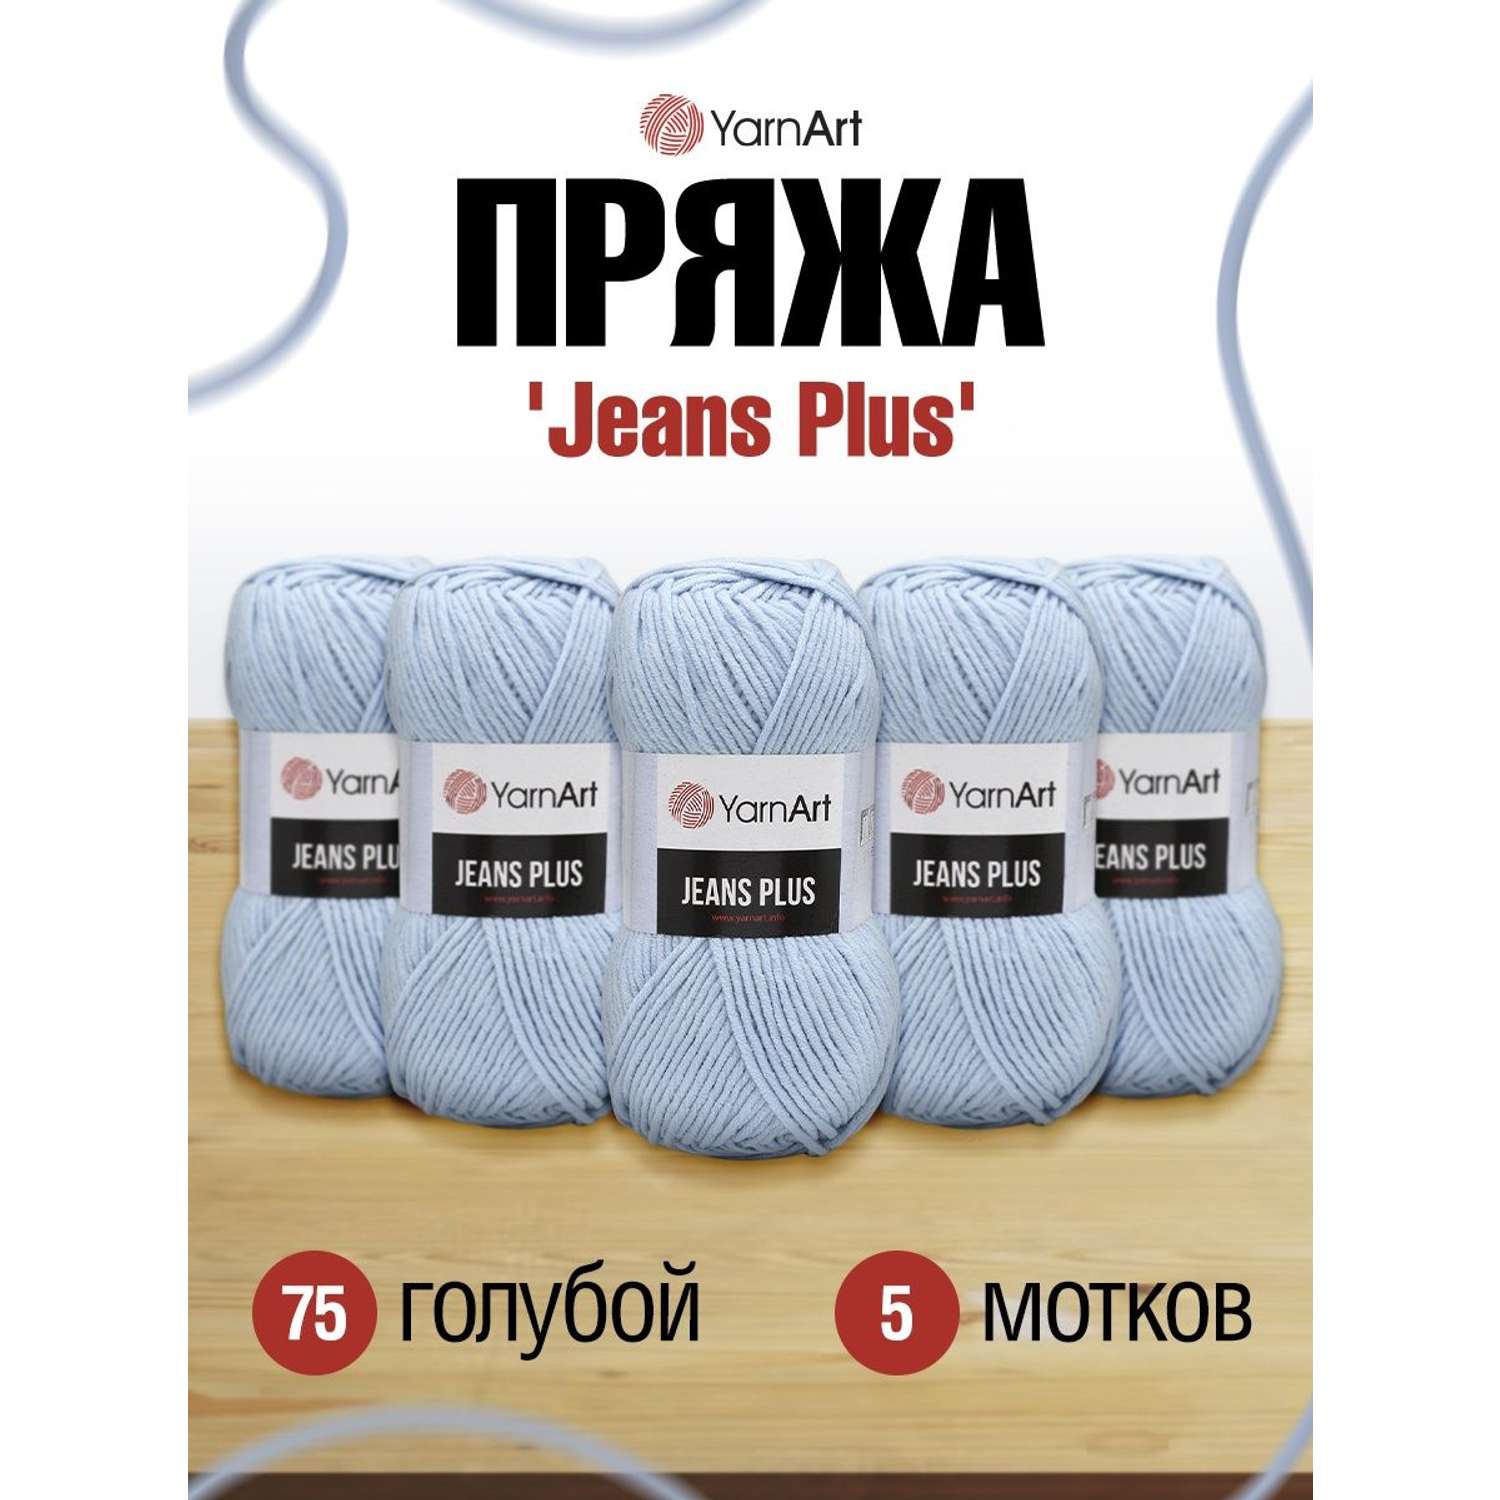 Пряжа YarnArt Jeans Plus объемная летняя 100 г 160 м 75 голубой 5 мотков - фото 1